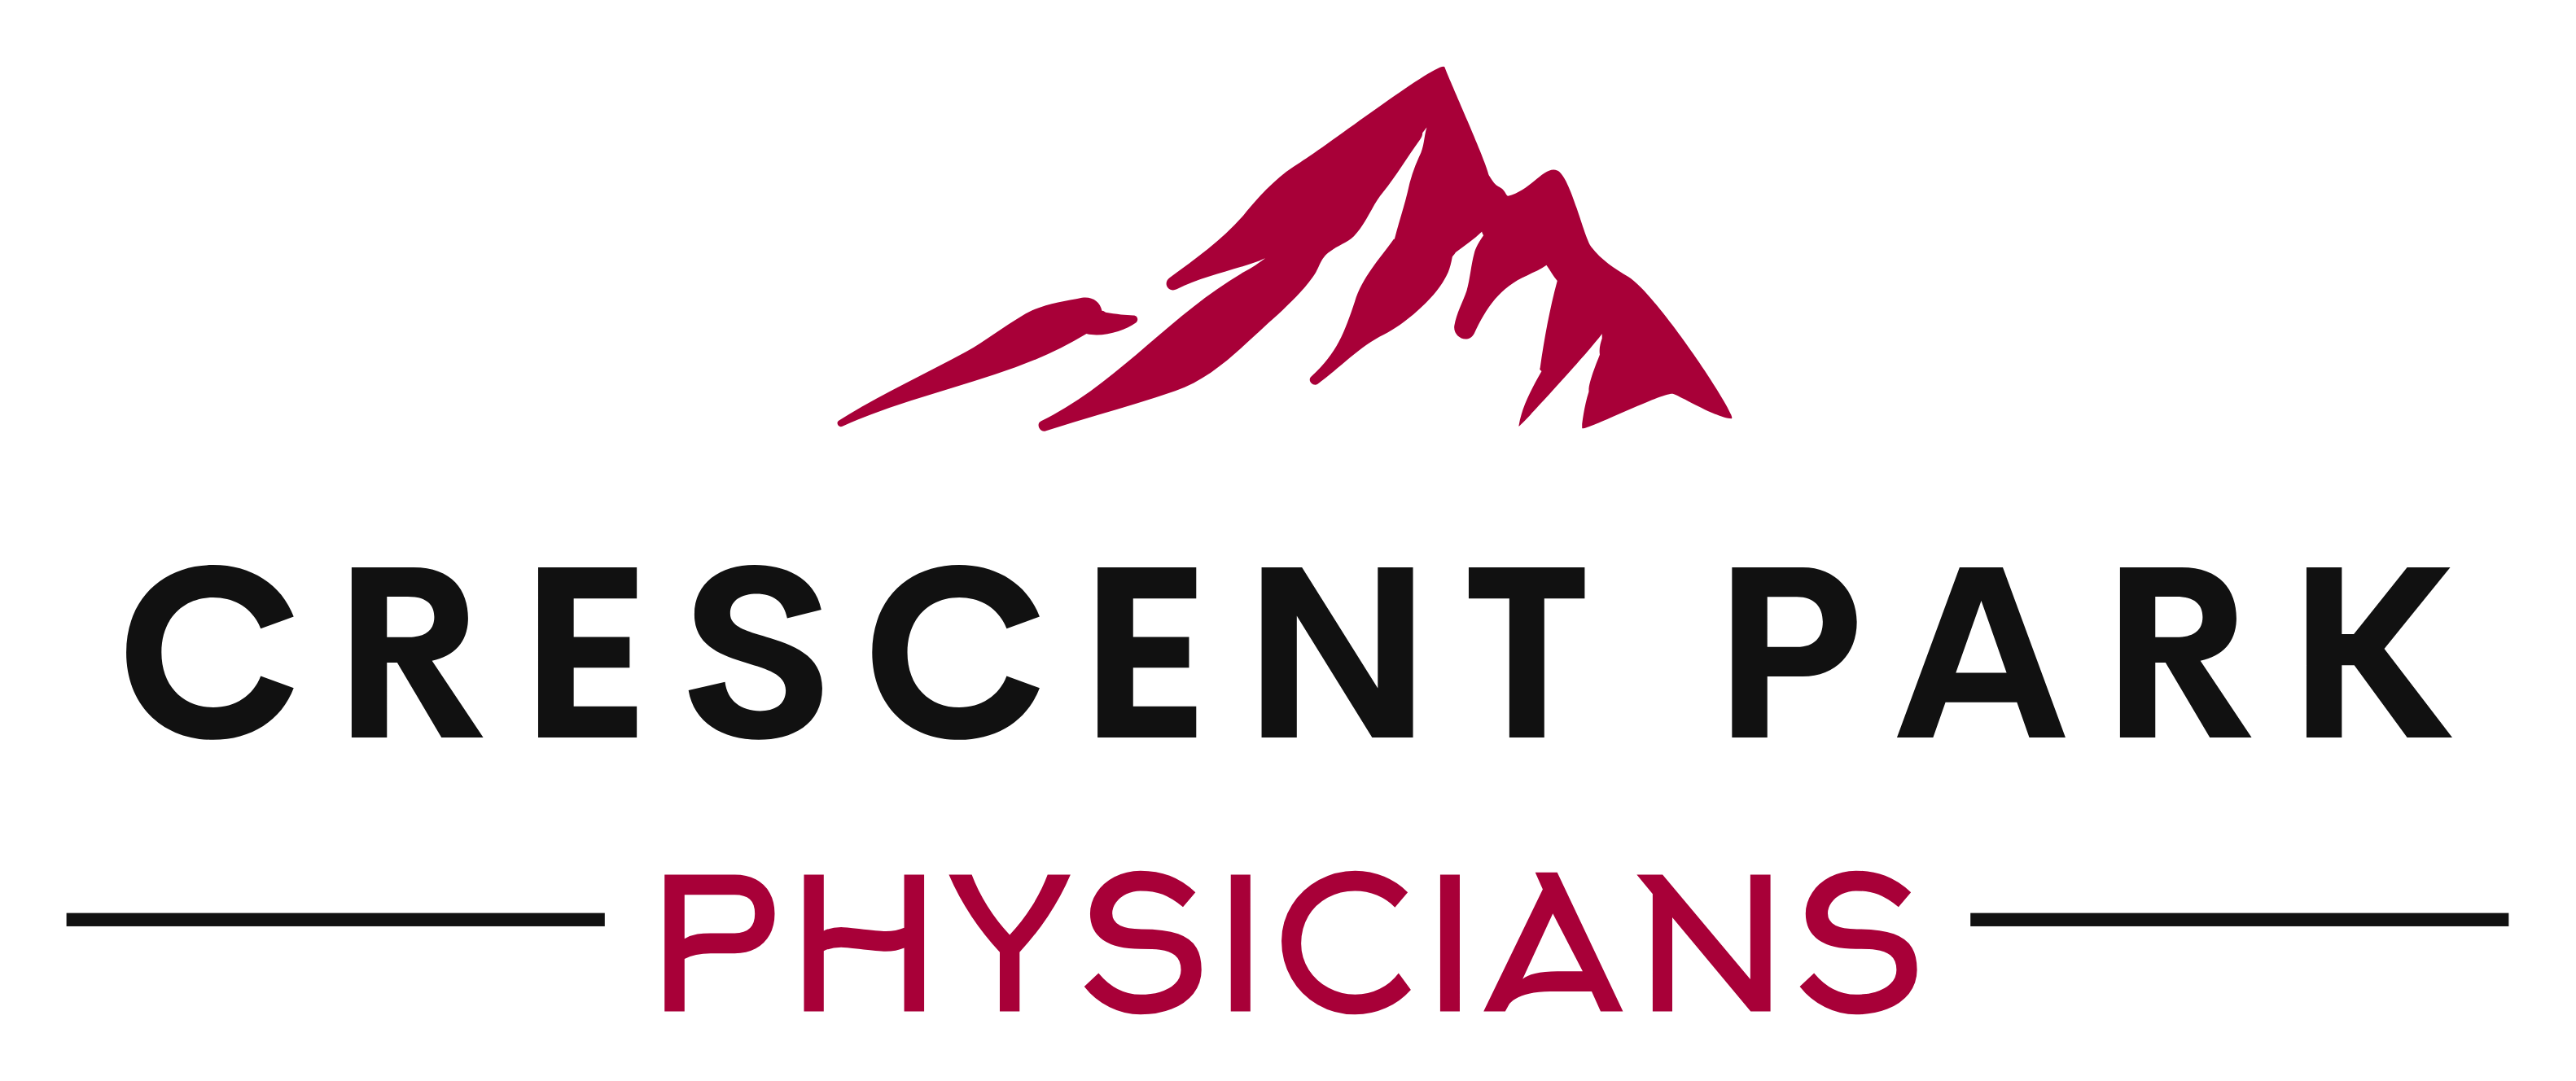 Crescent Park Physicians